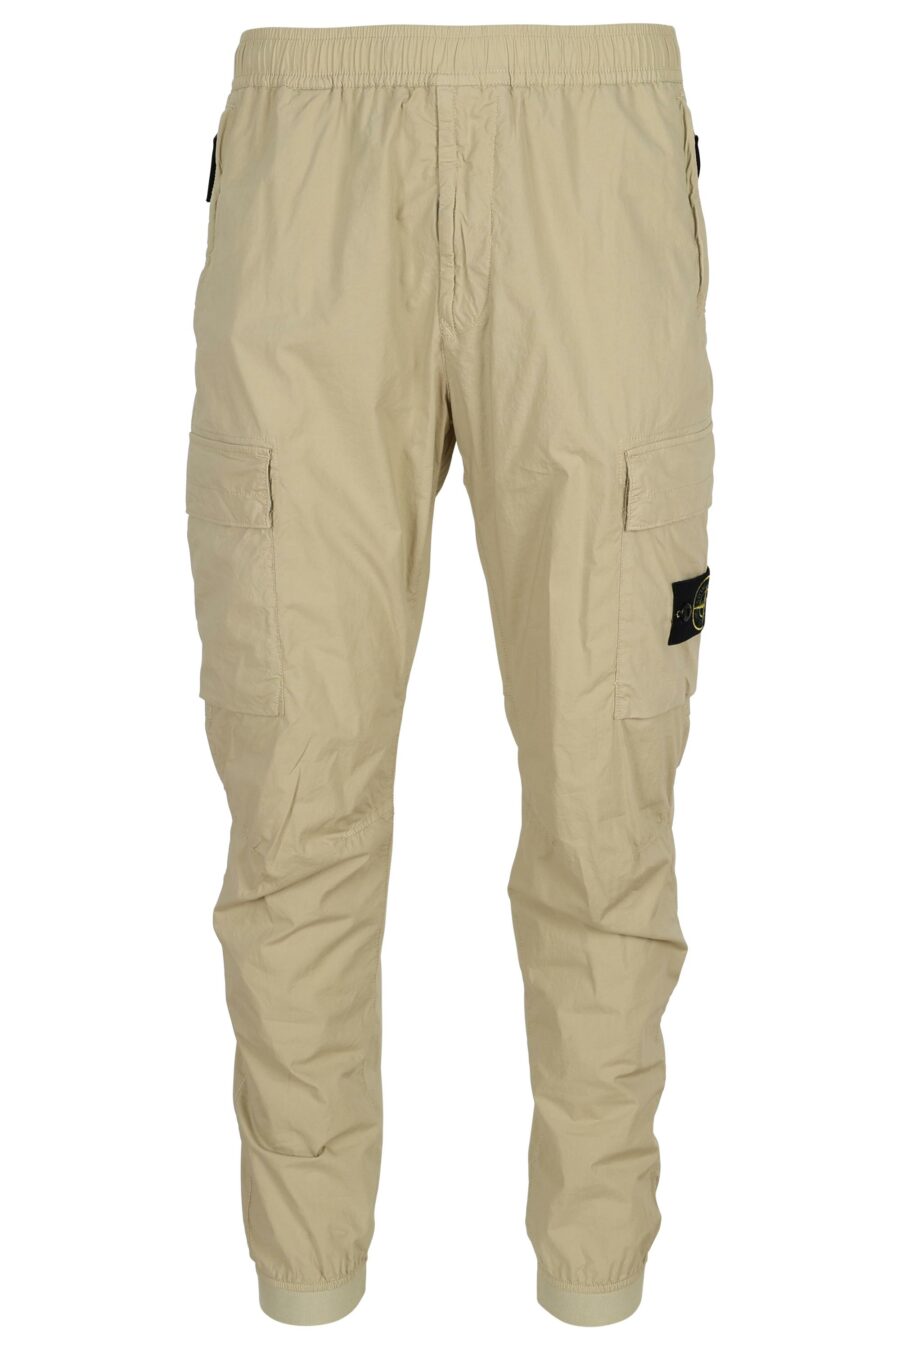 Pantalon fuselé de couleur sable avec patch boussole logo - 8052572906572